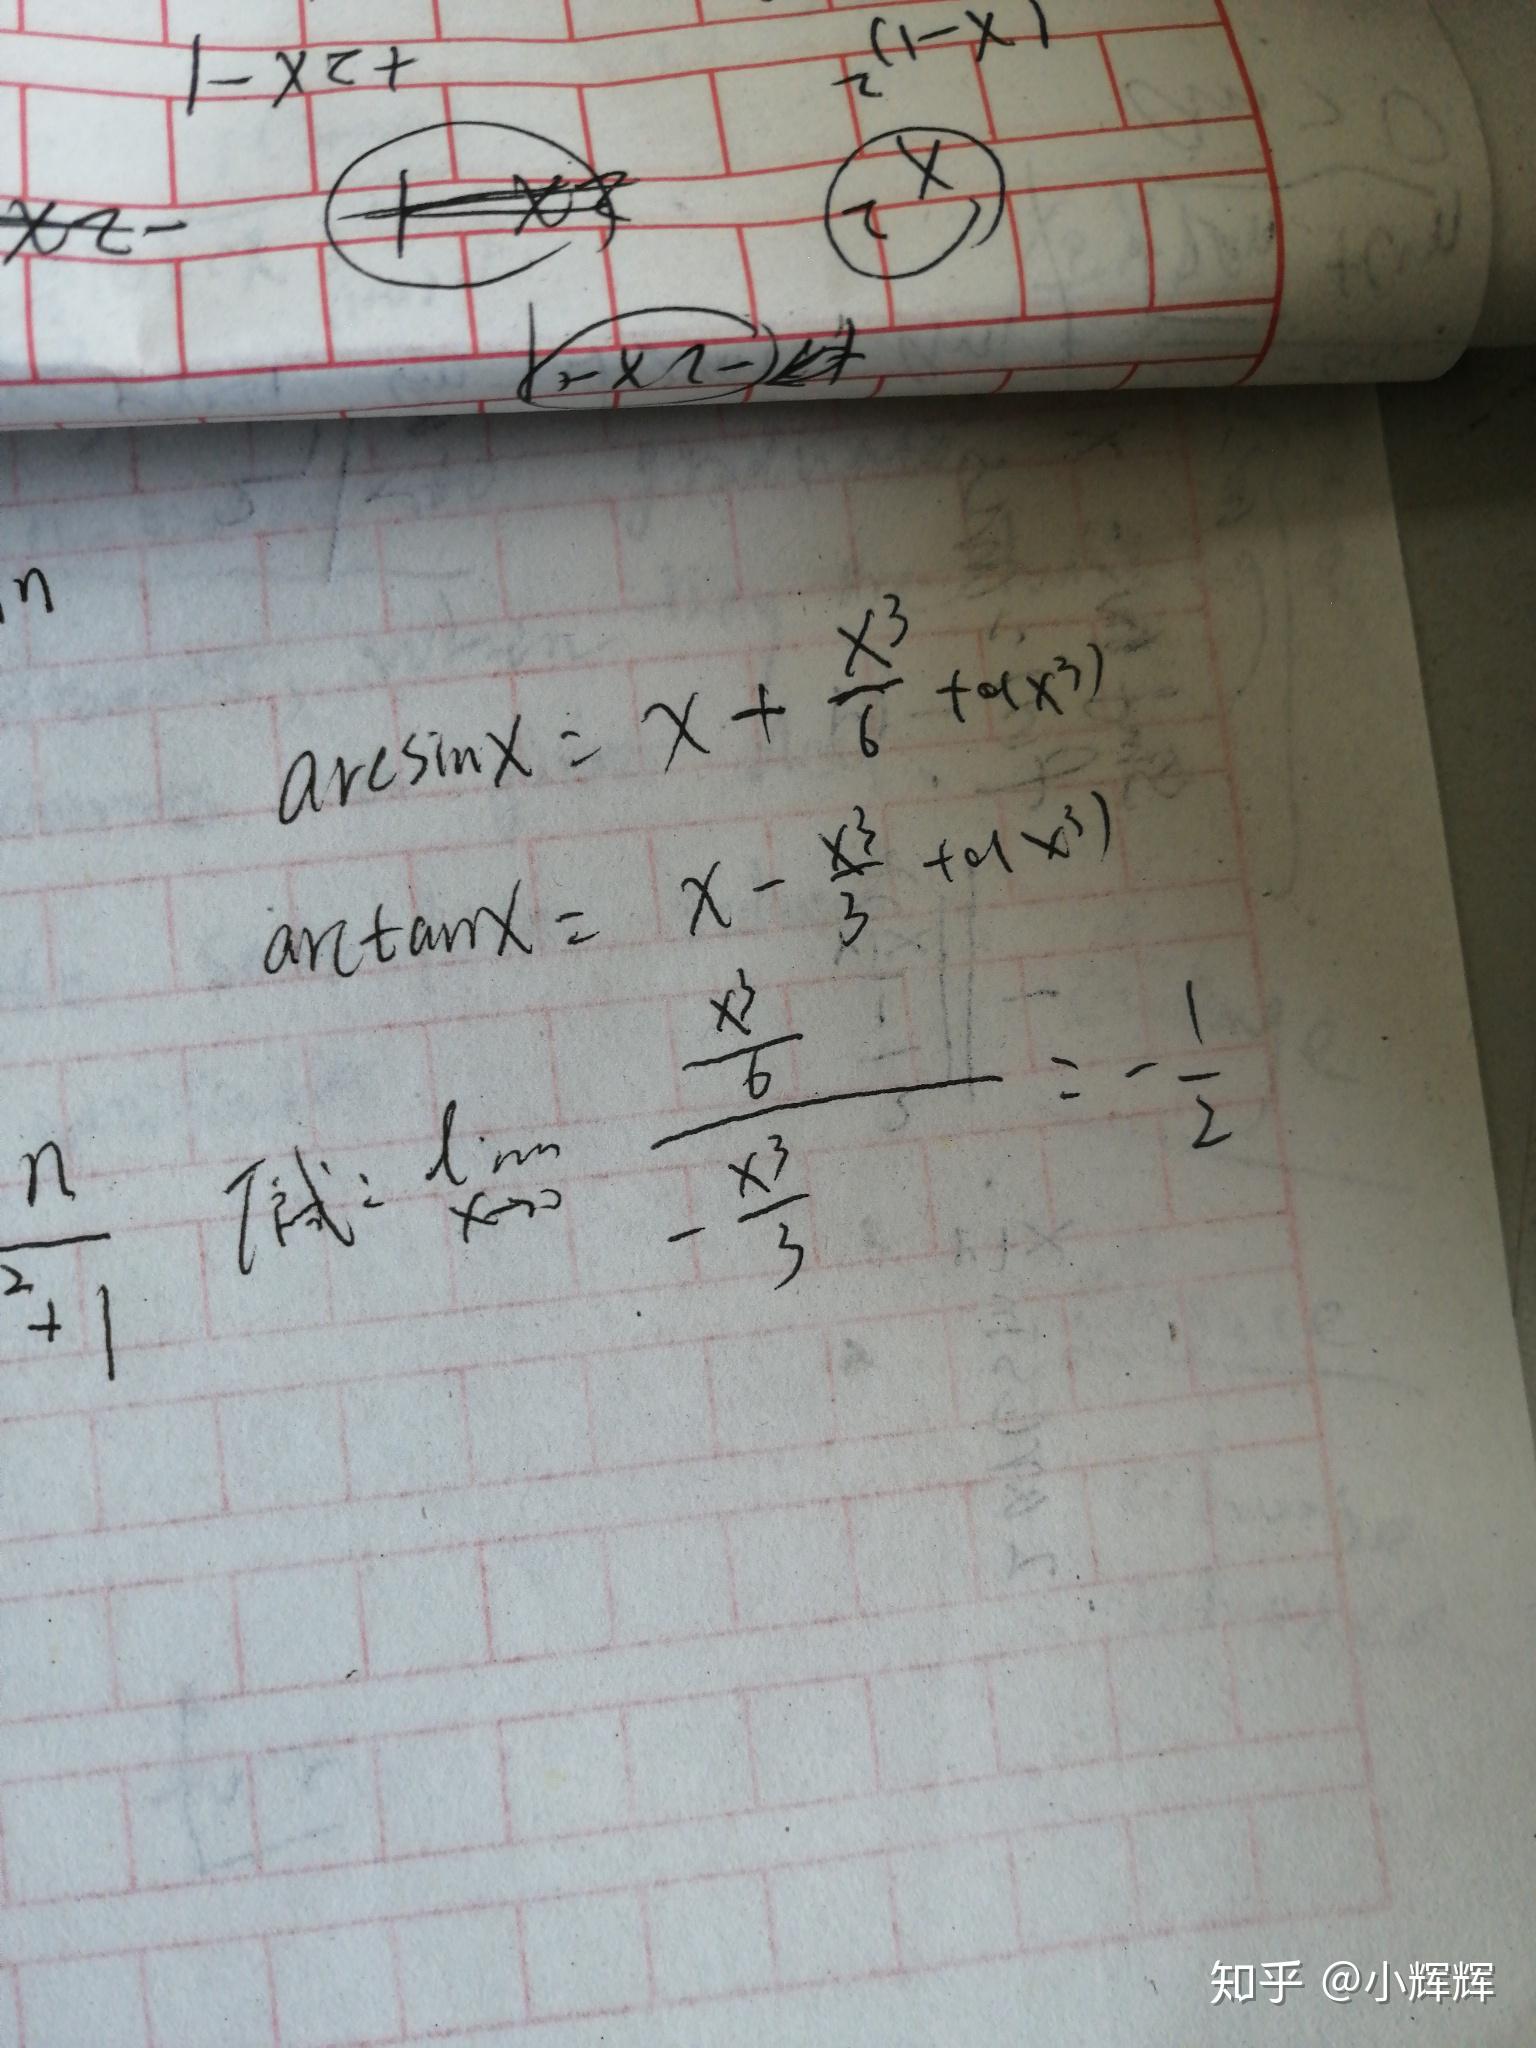 lim(x→0)(arcsinx-sinx)\/(arctanx-tanx)?